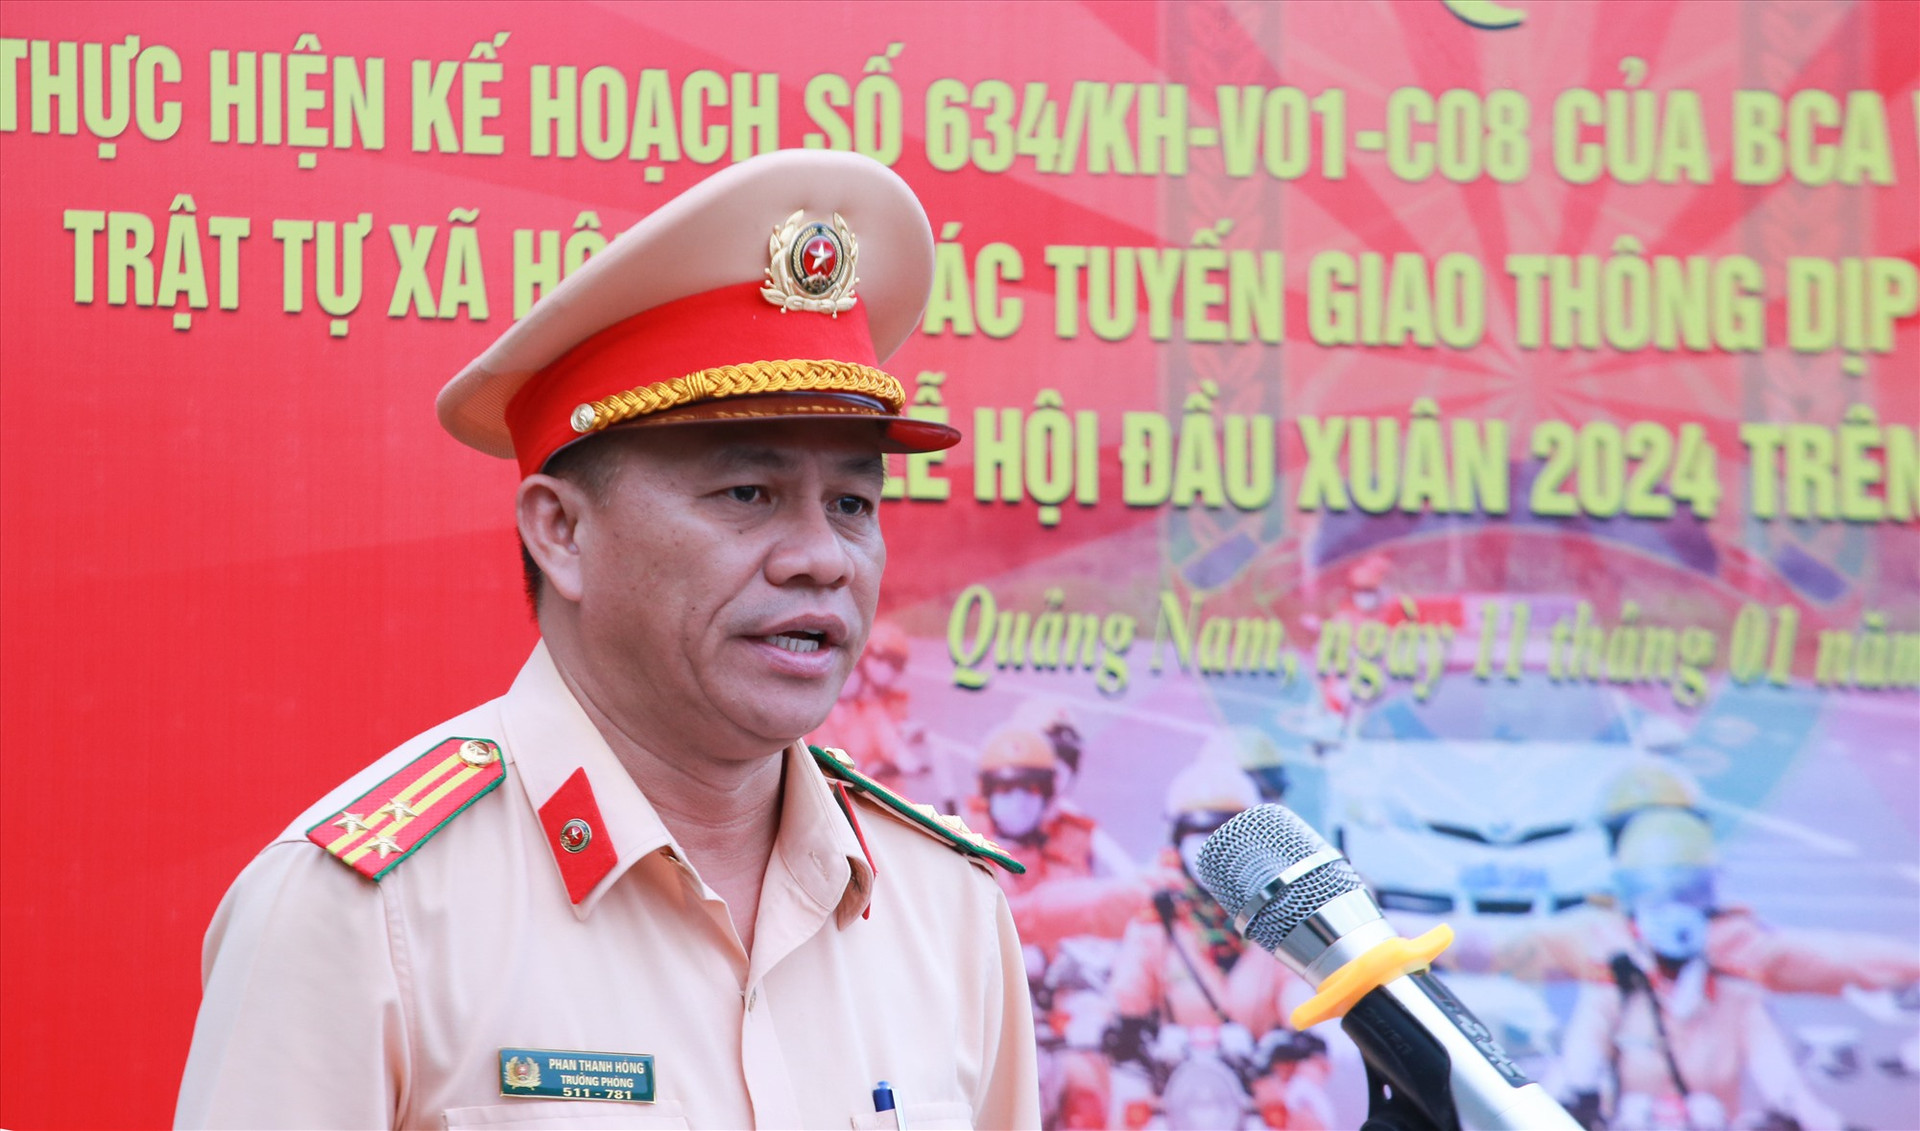 Thượng tá Phan Thanh Hồng - Trưởng Phòng CSGT phát lệnh ra quân cao điểm. Ảnh: T.C